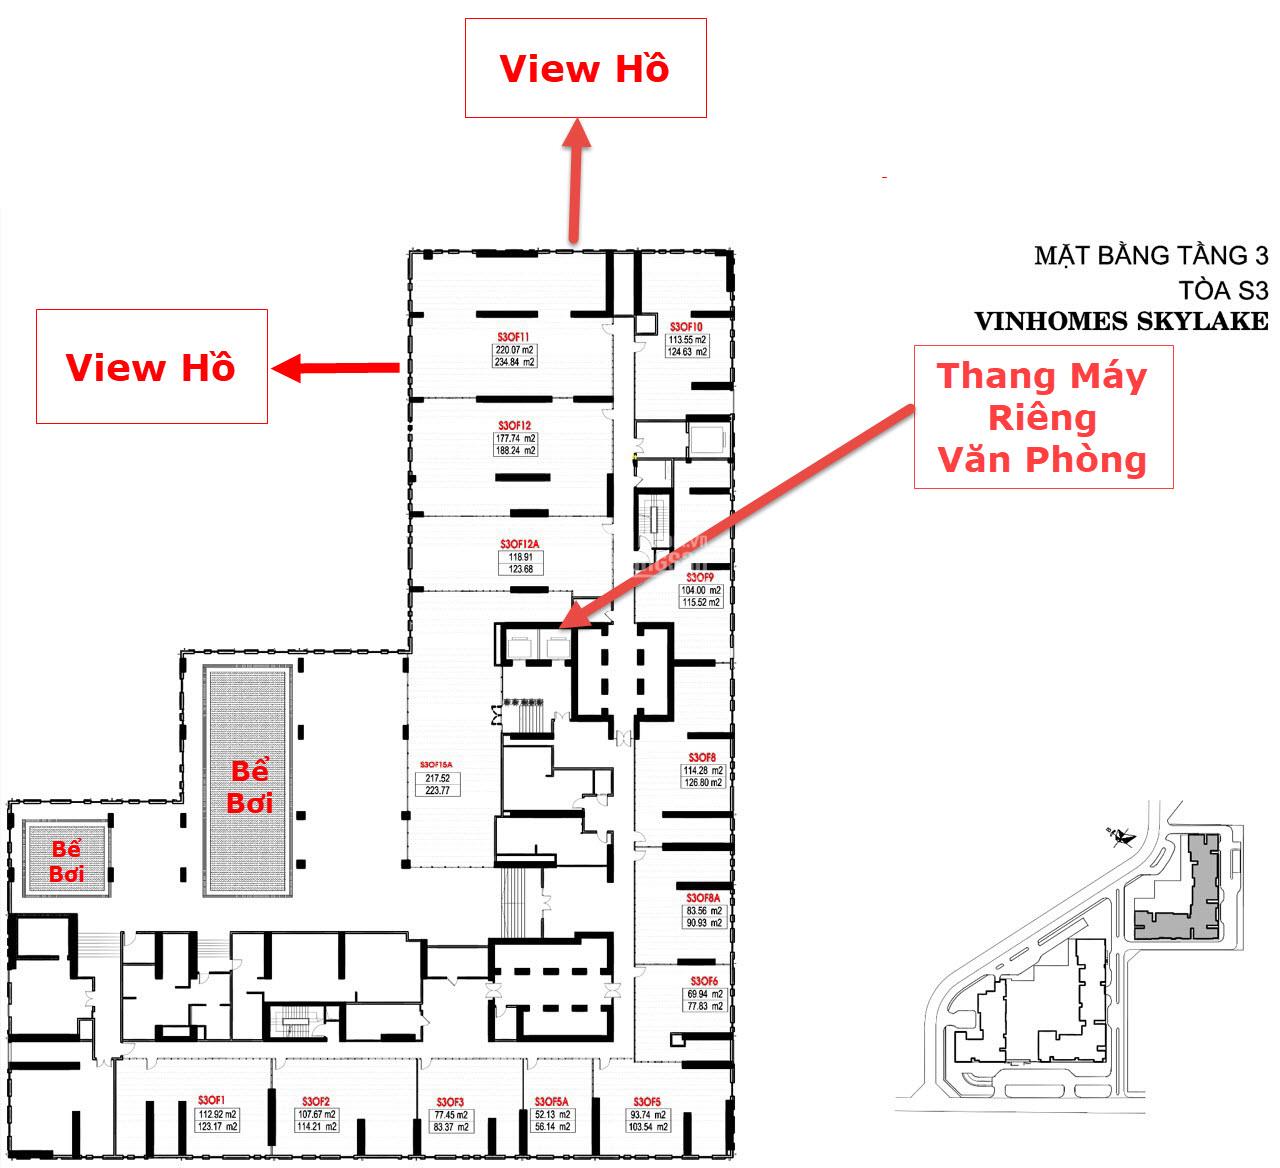 Cho thuê sàn TM và văn phòng Vinhome Skylake, mặt đường Phạm Hùng giá sốc từ 300 nghìn/m2